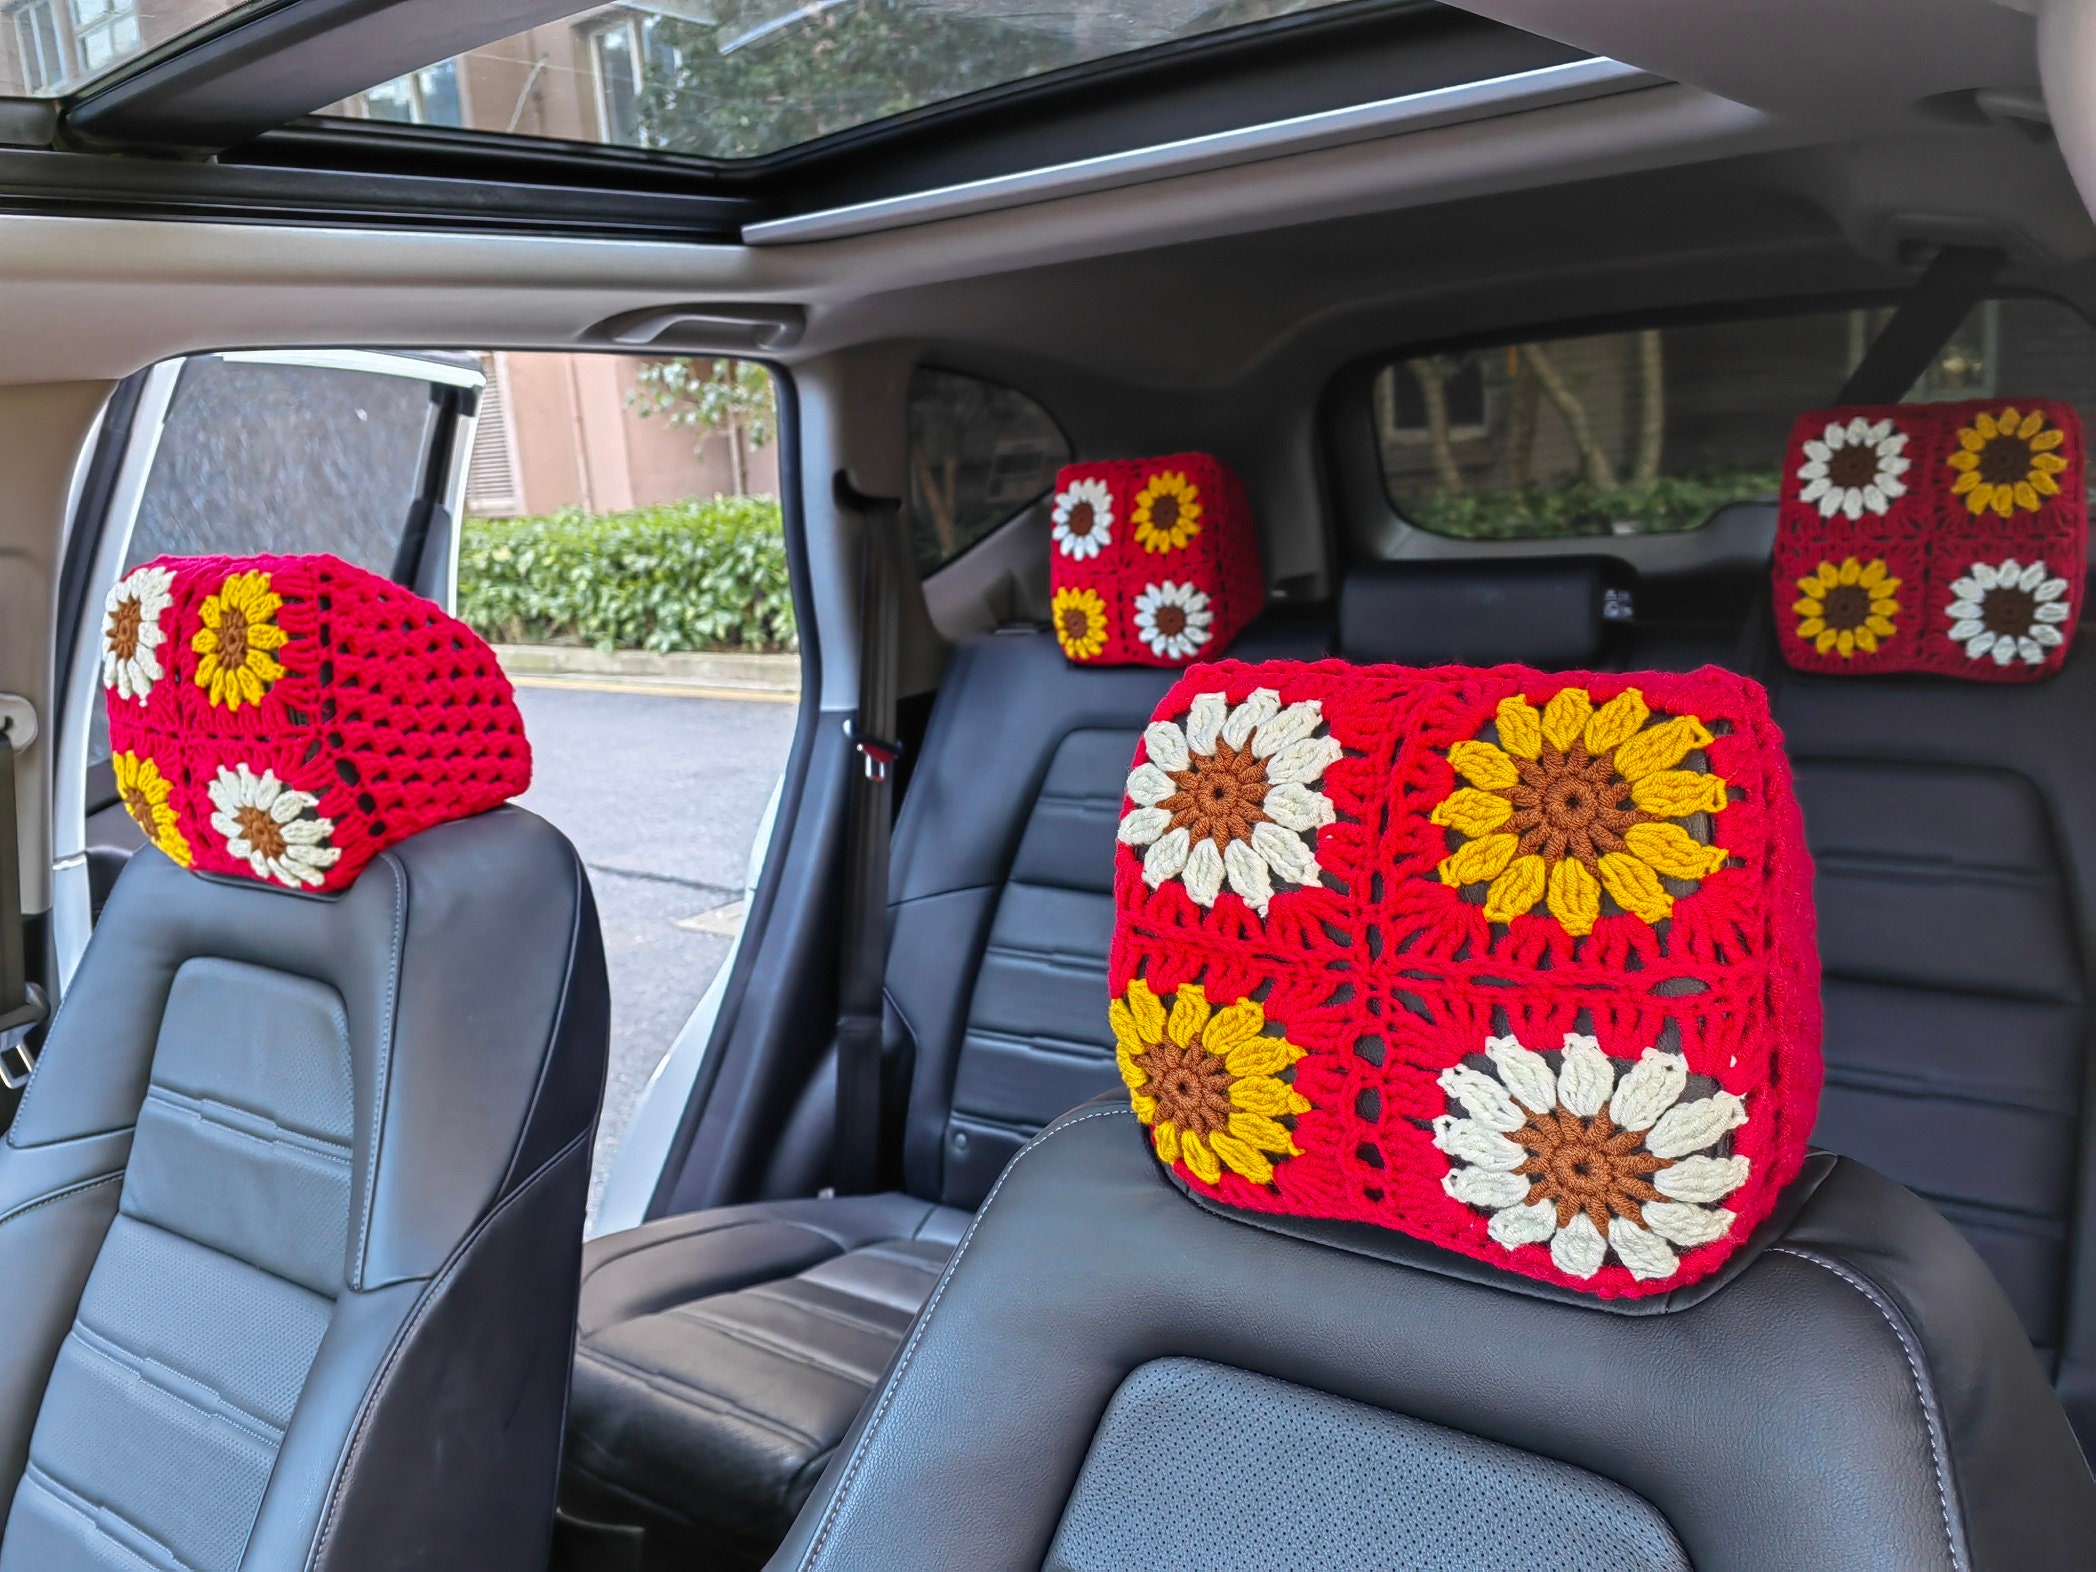 Für Kinder Erwachsene Auto Sitz Kopfstütze Nacken Kissen für KIA